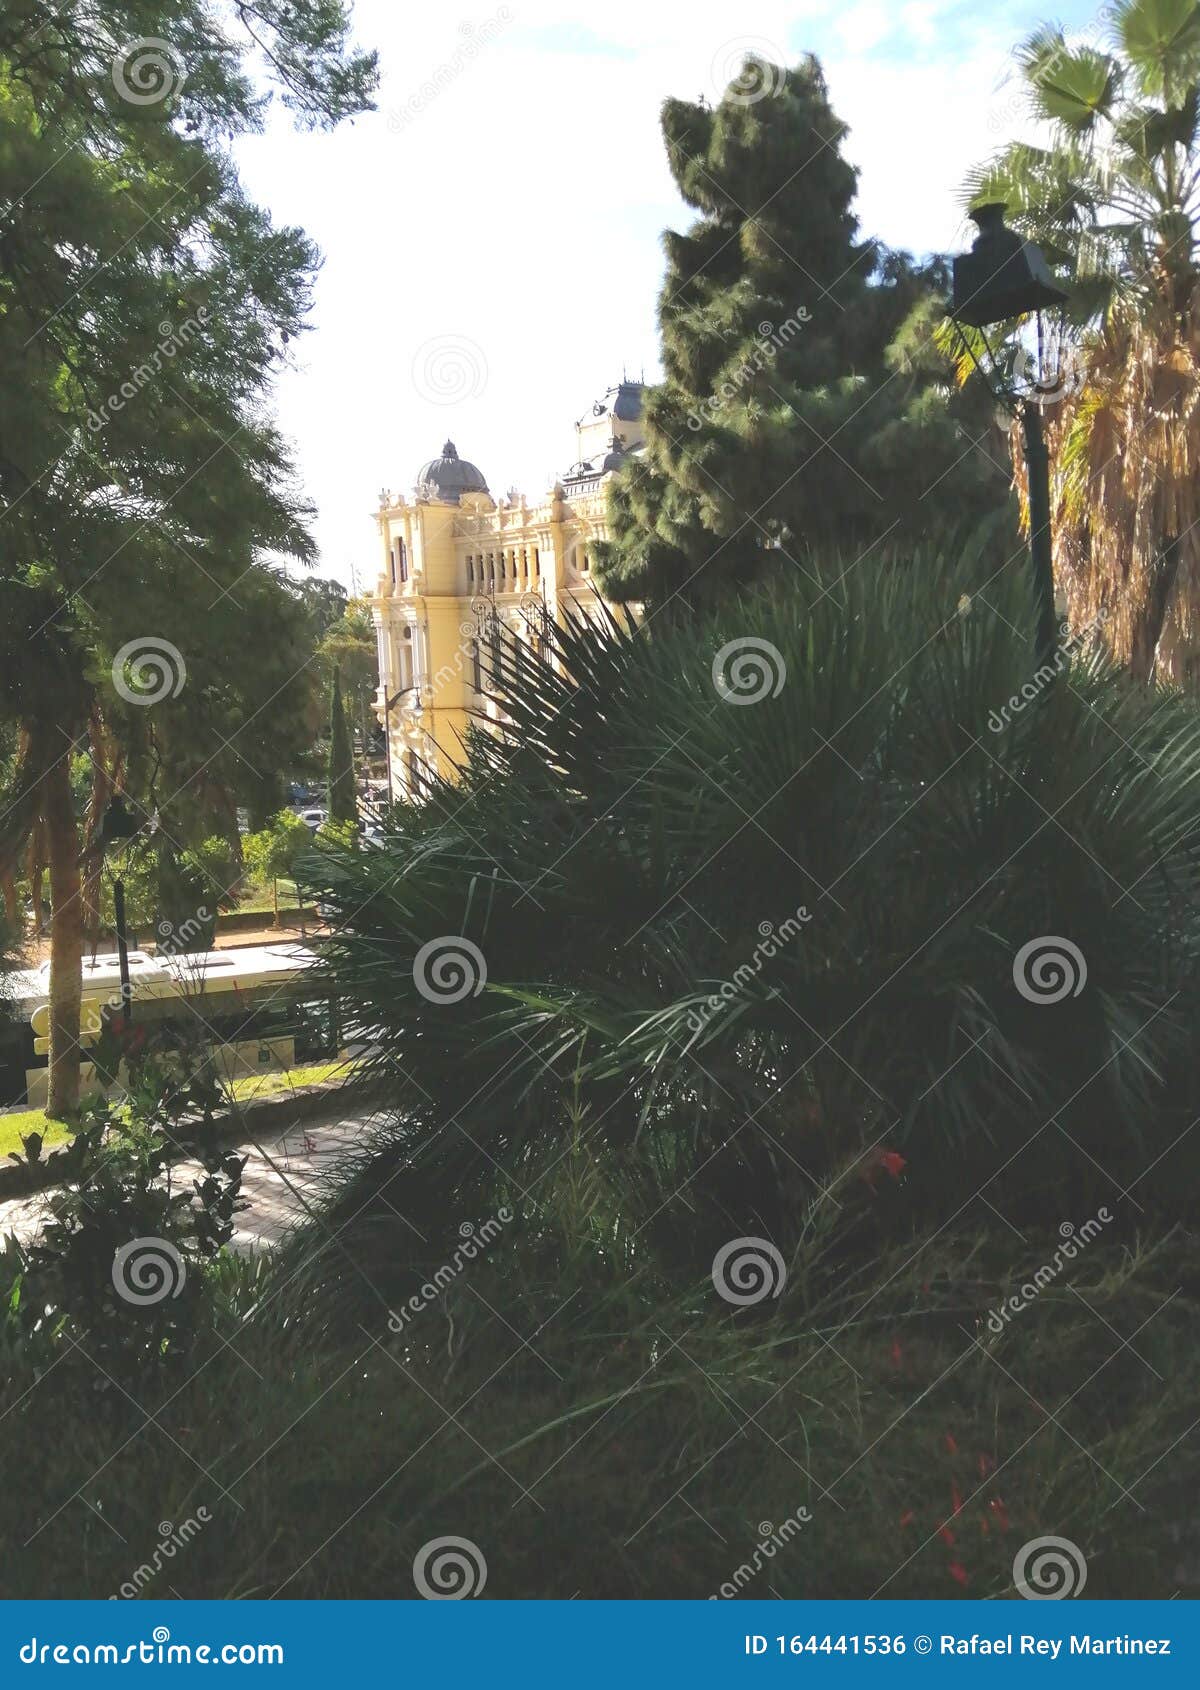 puerta oscura gardens-malaga-andalusia